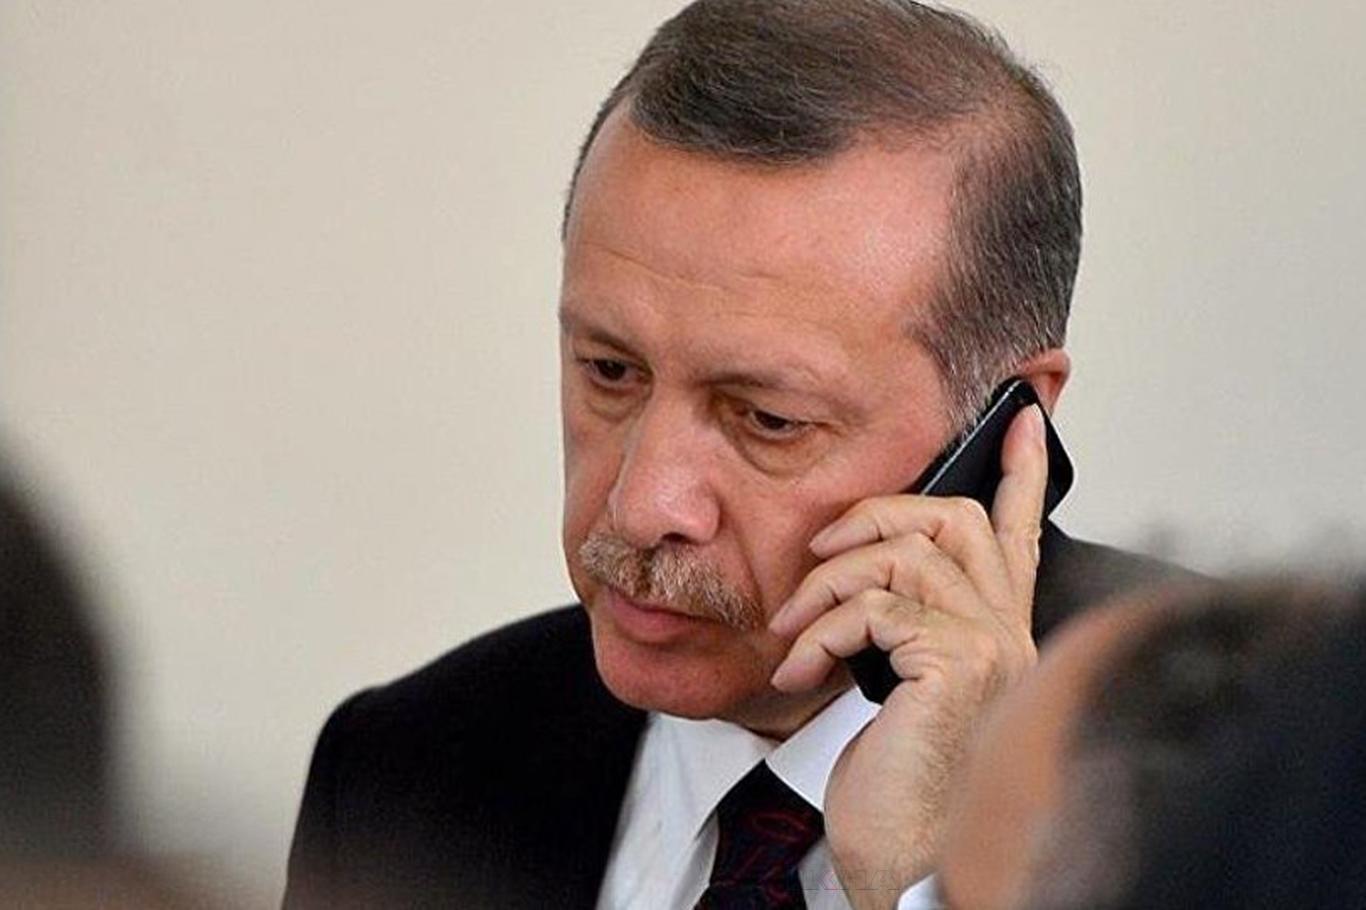 Erdoğan, Uzbekistan President Mirziyoyev talk over the phone